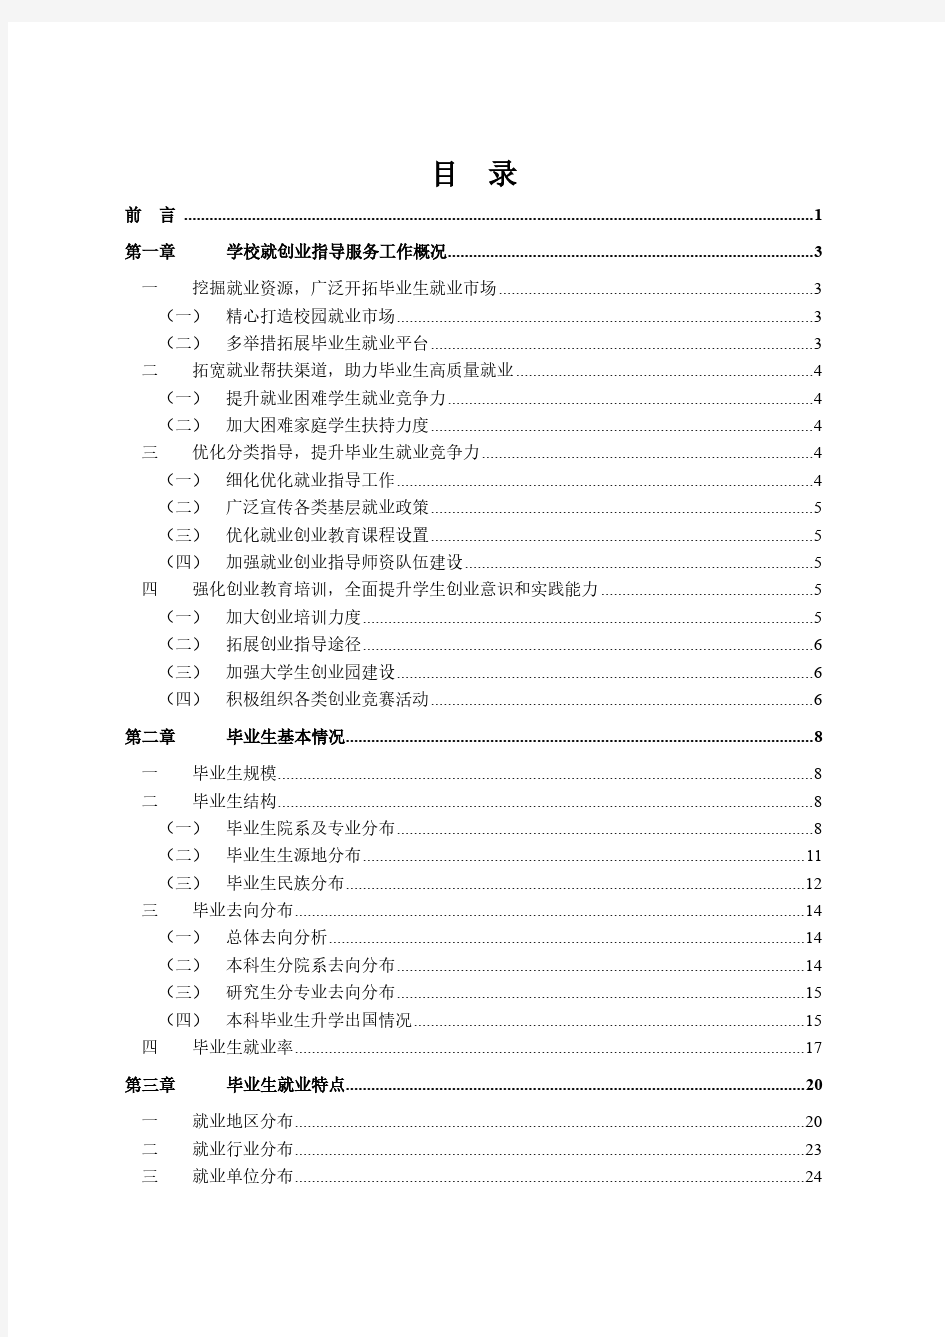 南京信息工程大学2016年毕业生就业质量报告